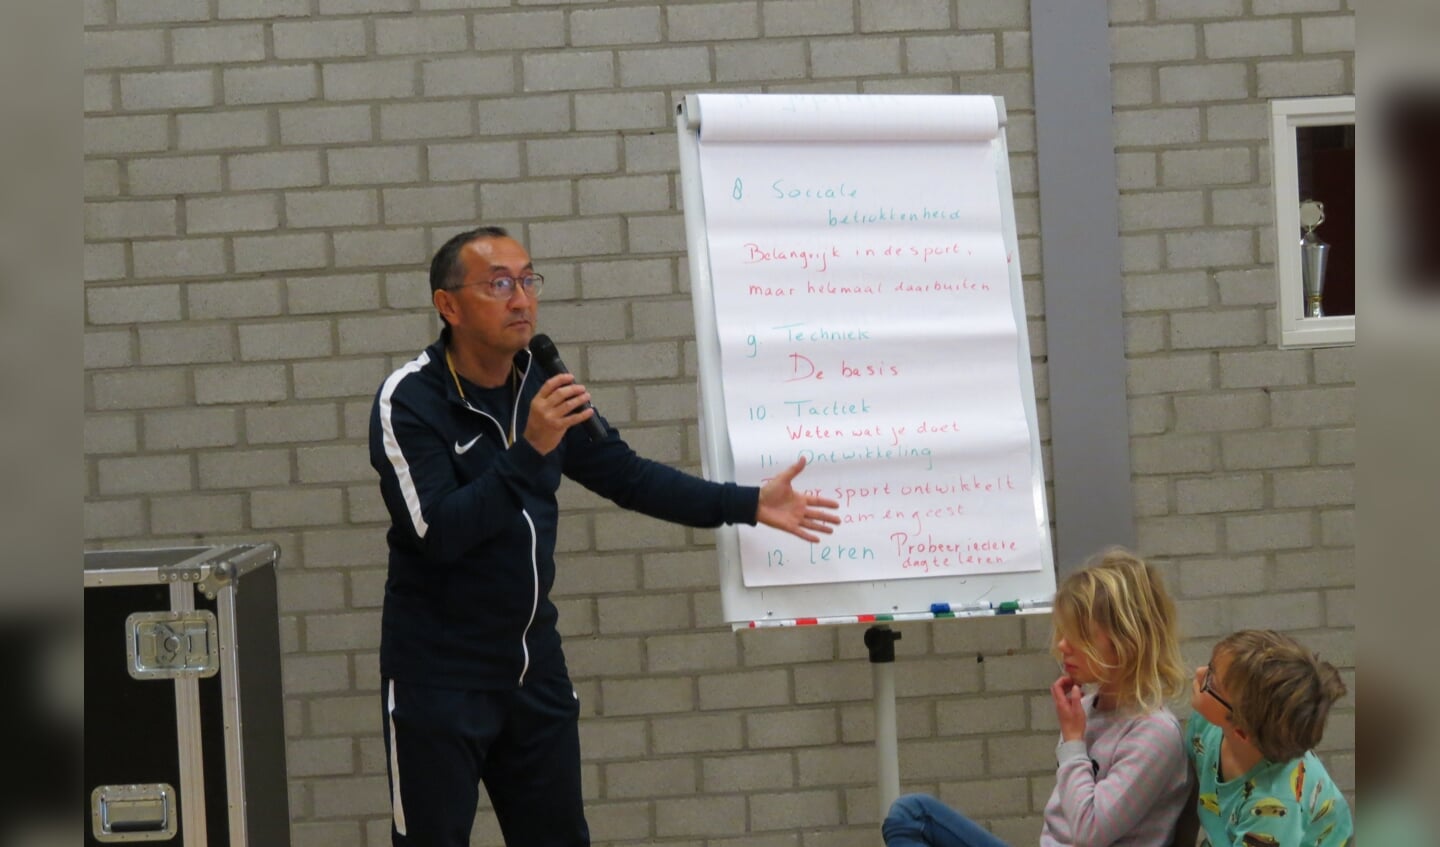 Gymleraar Eric Matherus geeft uitleg over de 14 regels van Johan Cruijff.